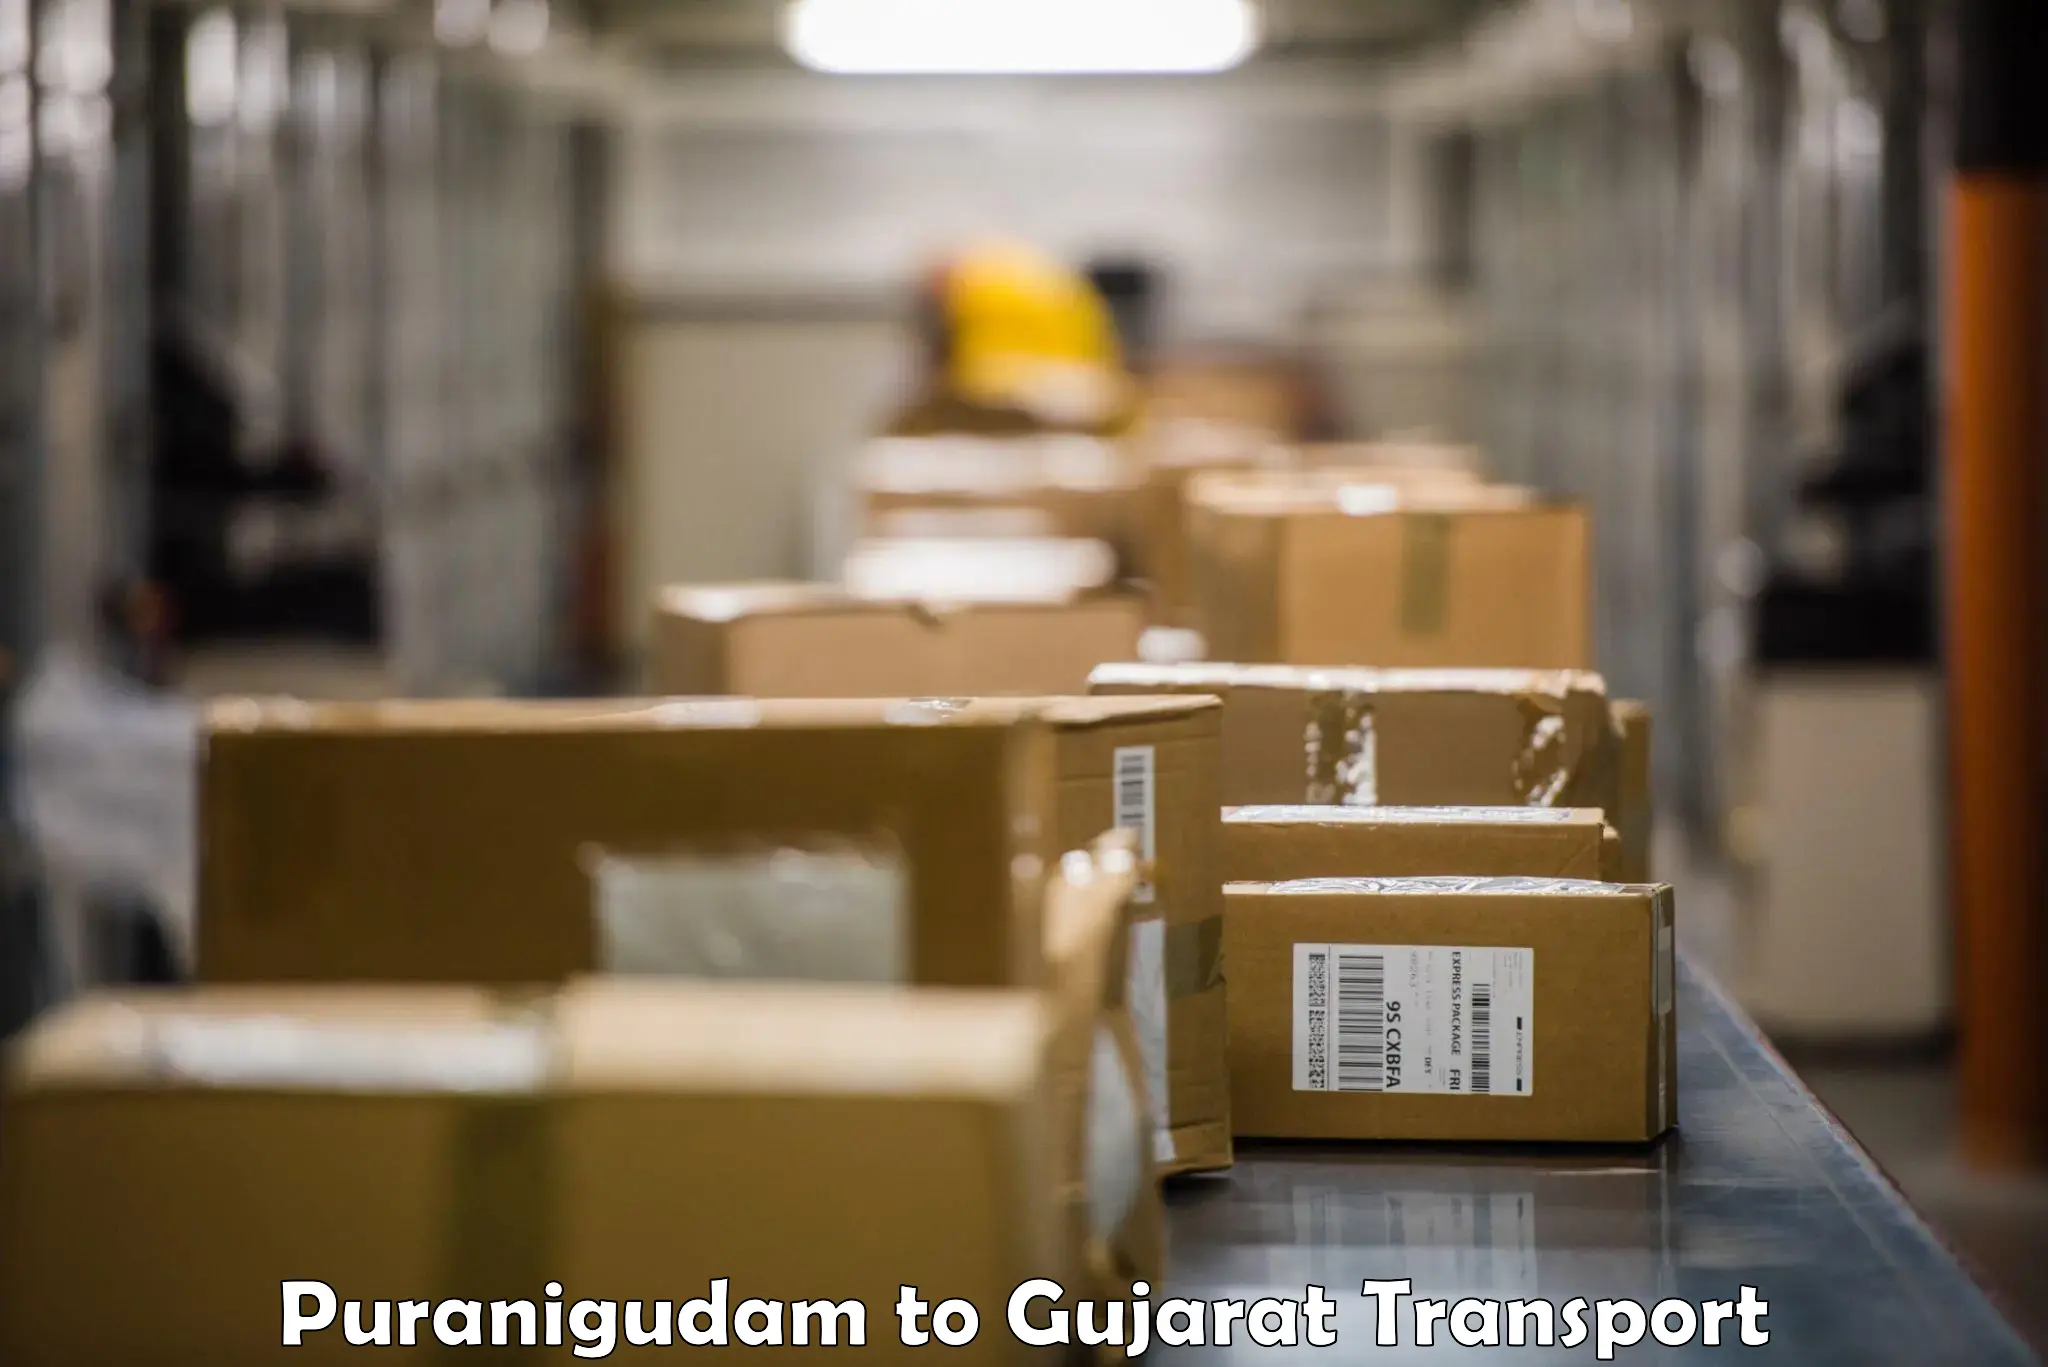 Goods delivery service Puranigudam to Gandhinagar